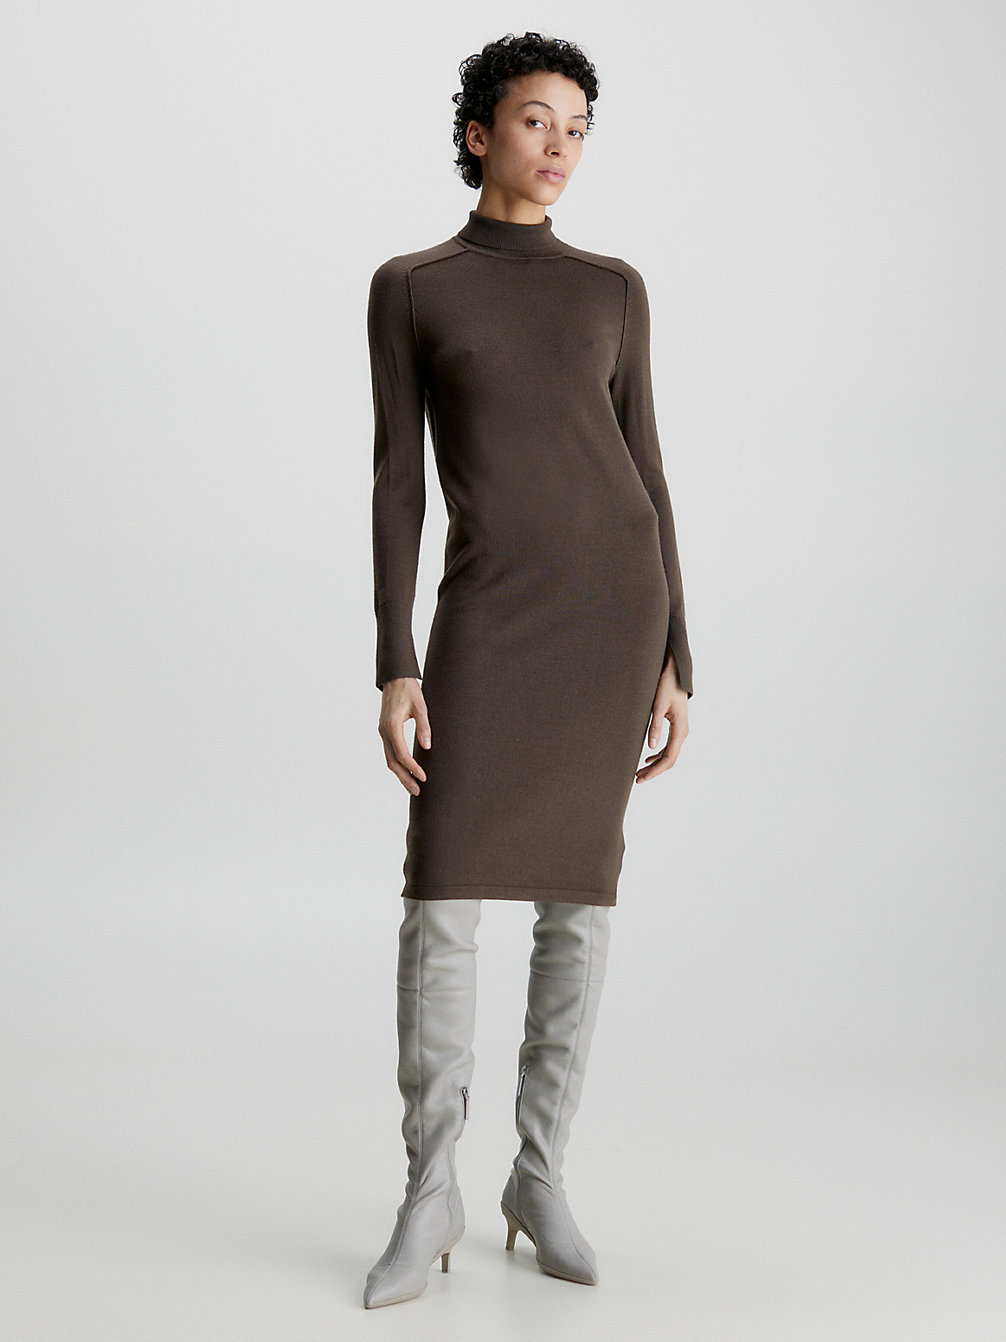 BROWN KELP > Wełniana Dopasowana Sukienka Z Wywijanym Dekoltem > undefined Kobiety - Calvin Klein